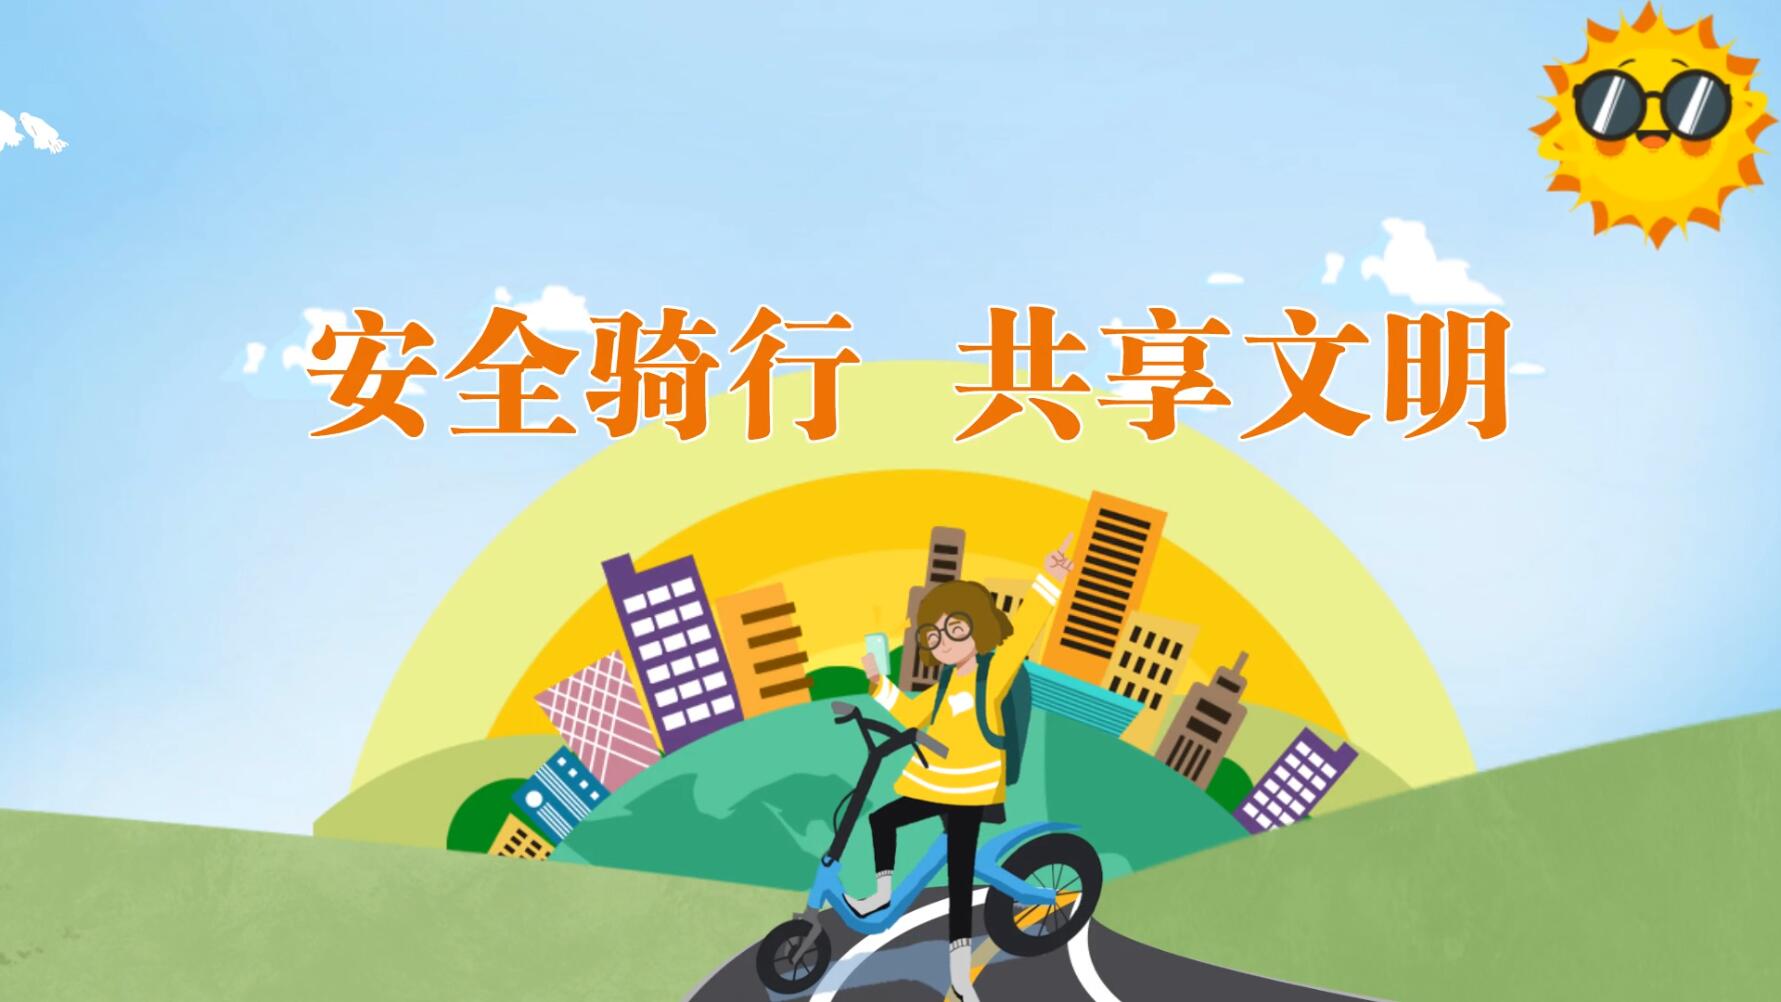 【庆阳视频】安全骑行 共享文明